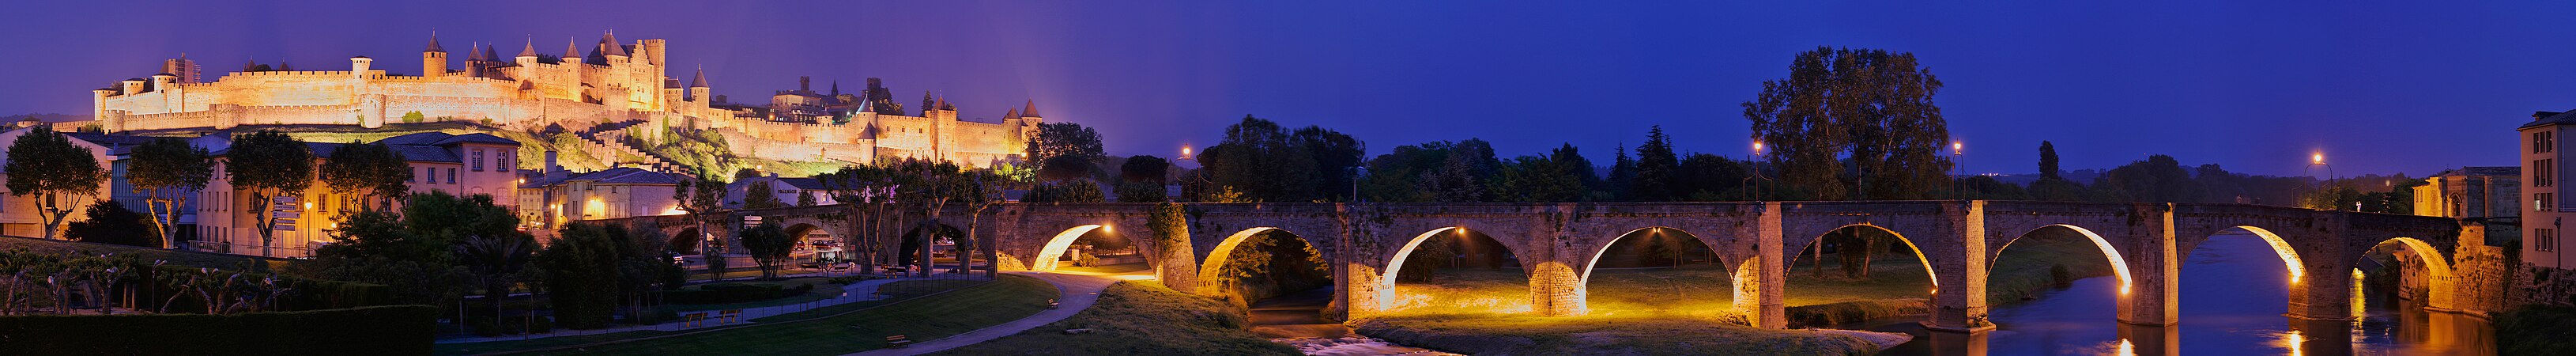 Carcassonne Pont Vieux, by Jean-Pierre Lavoie